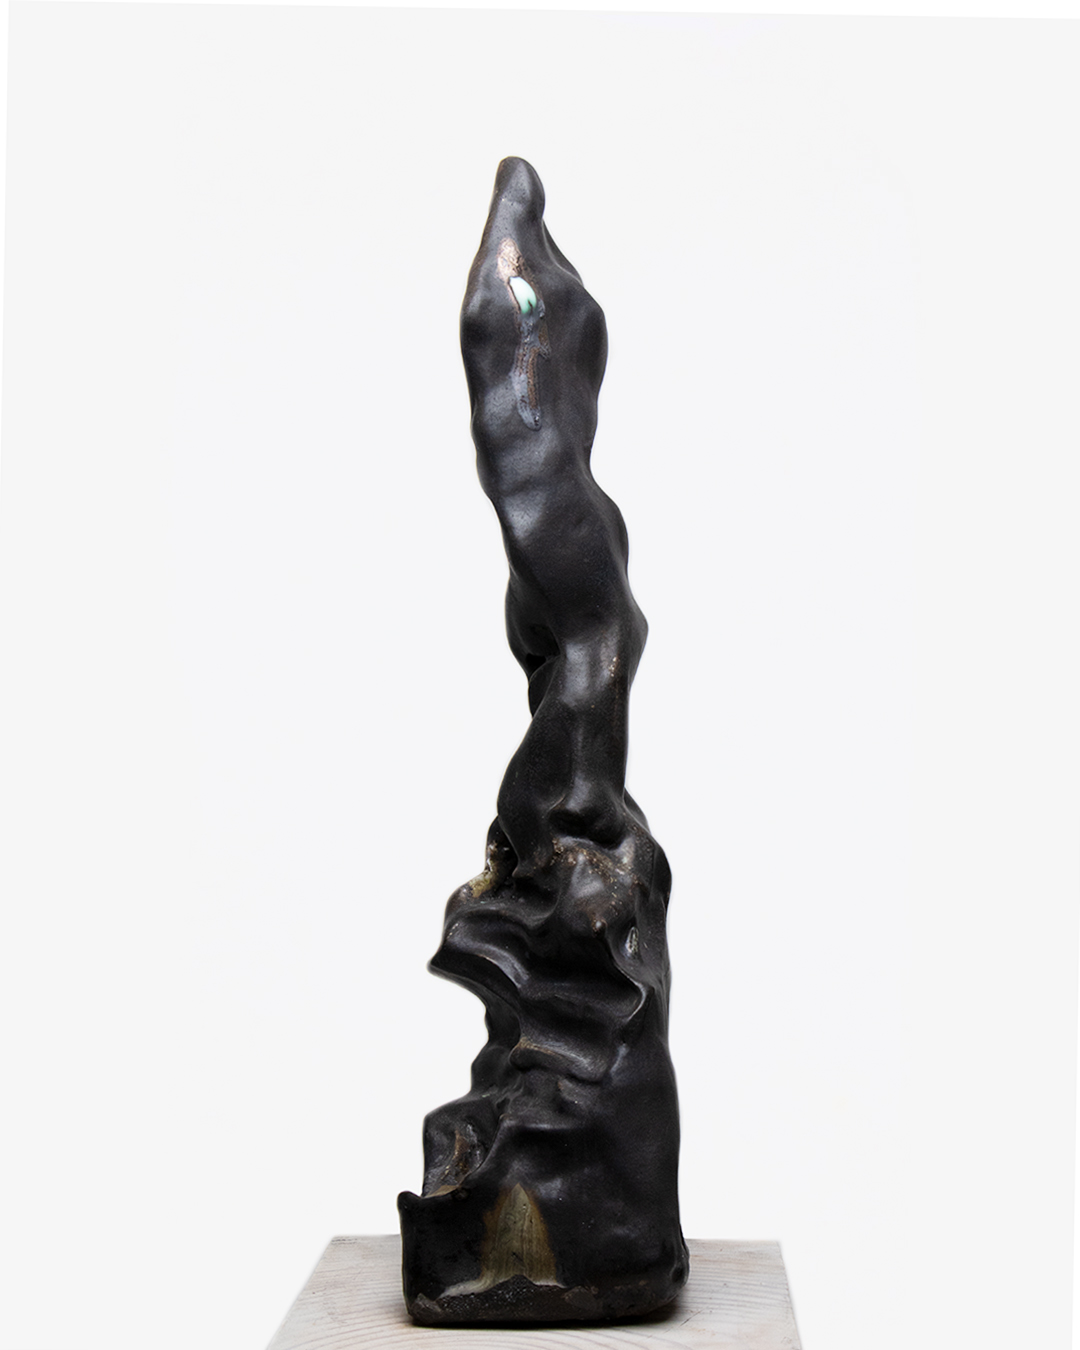 Nicolas-Pierre Réveillard, sculpture "Ascension" 5